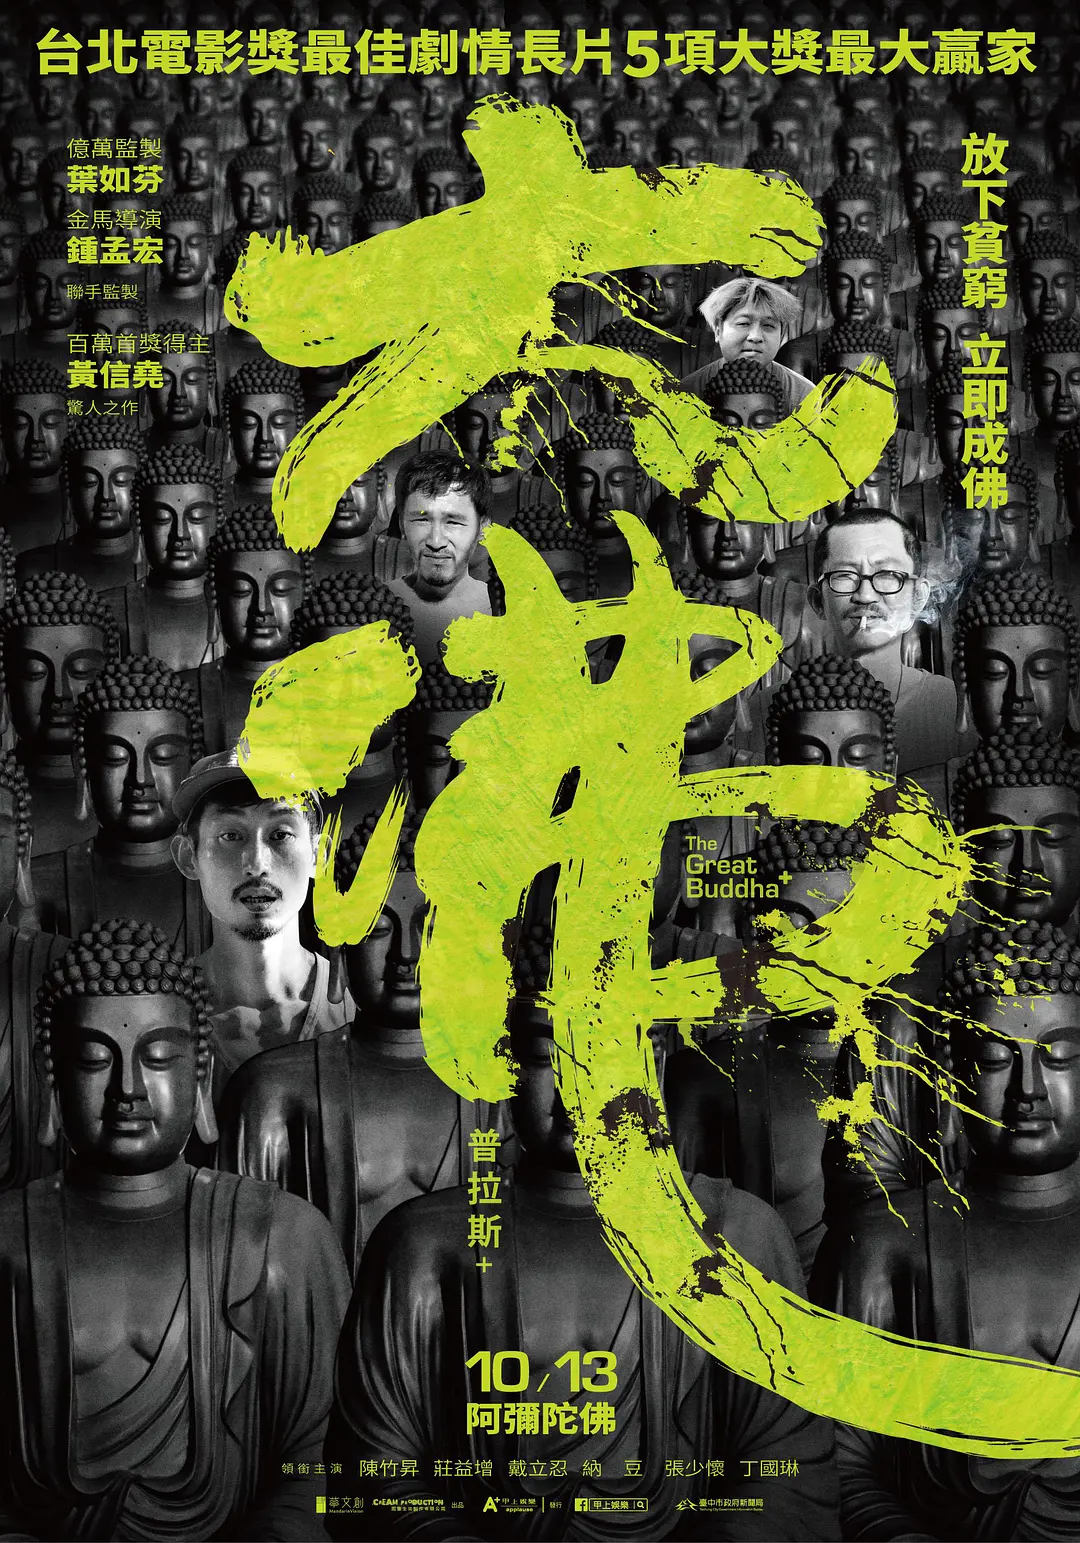 台湾省的电影《大佛普拉斯》带你了解台湾的政治乱象